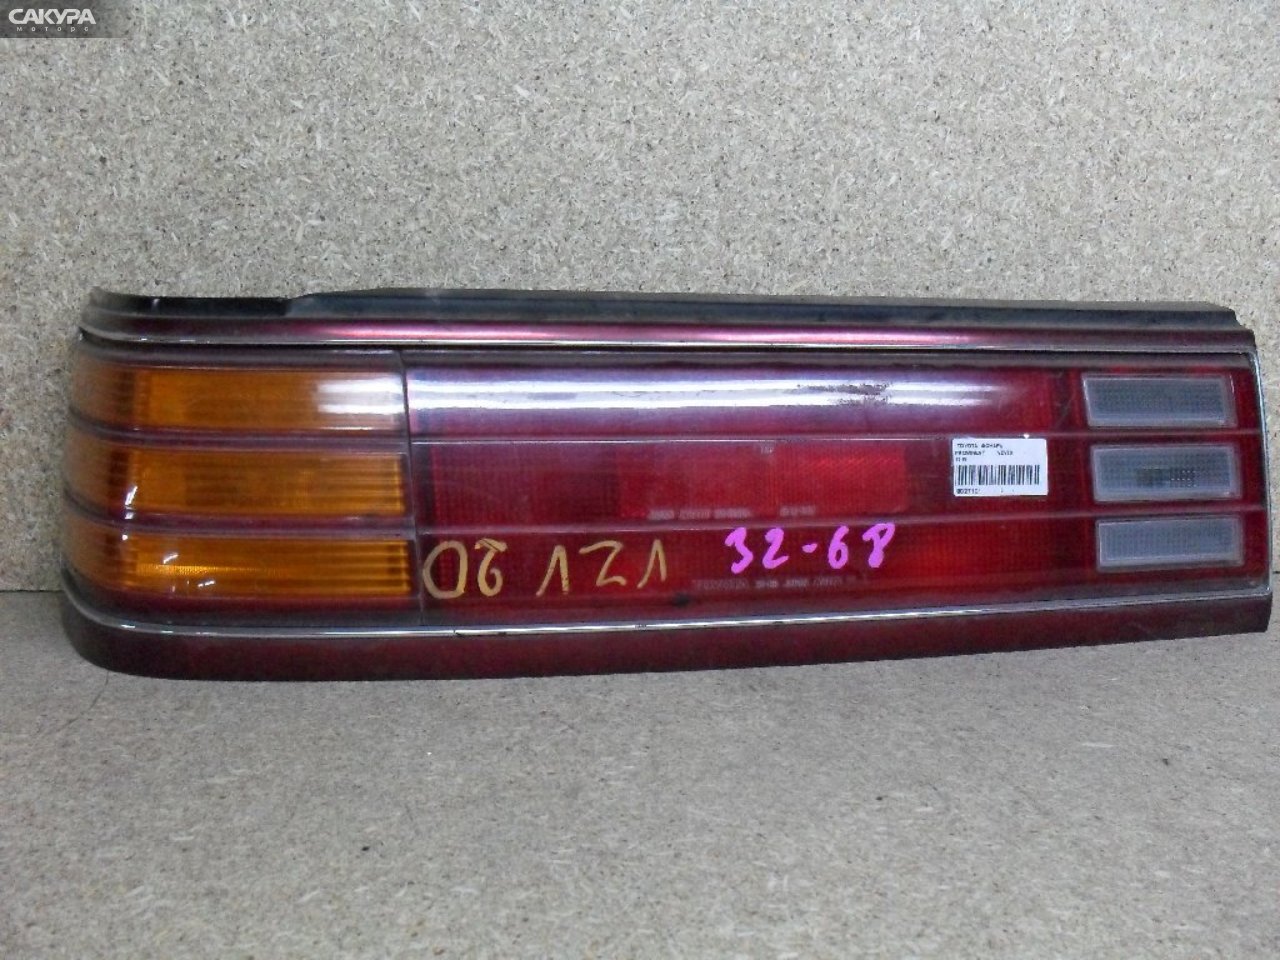 Фонарь стоп-сигнала левый Toyota Camry Prominent VZV20 32-68: купить в Сакура Абакан.